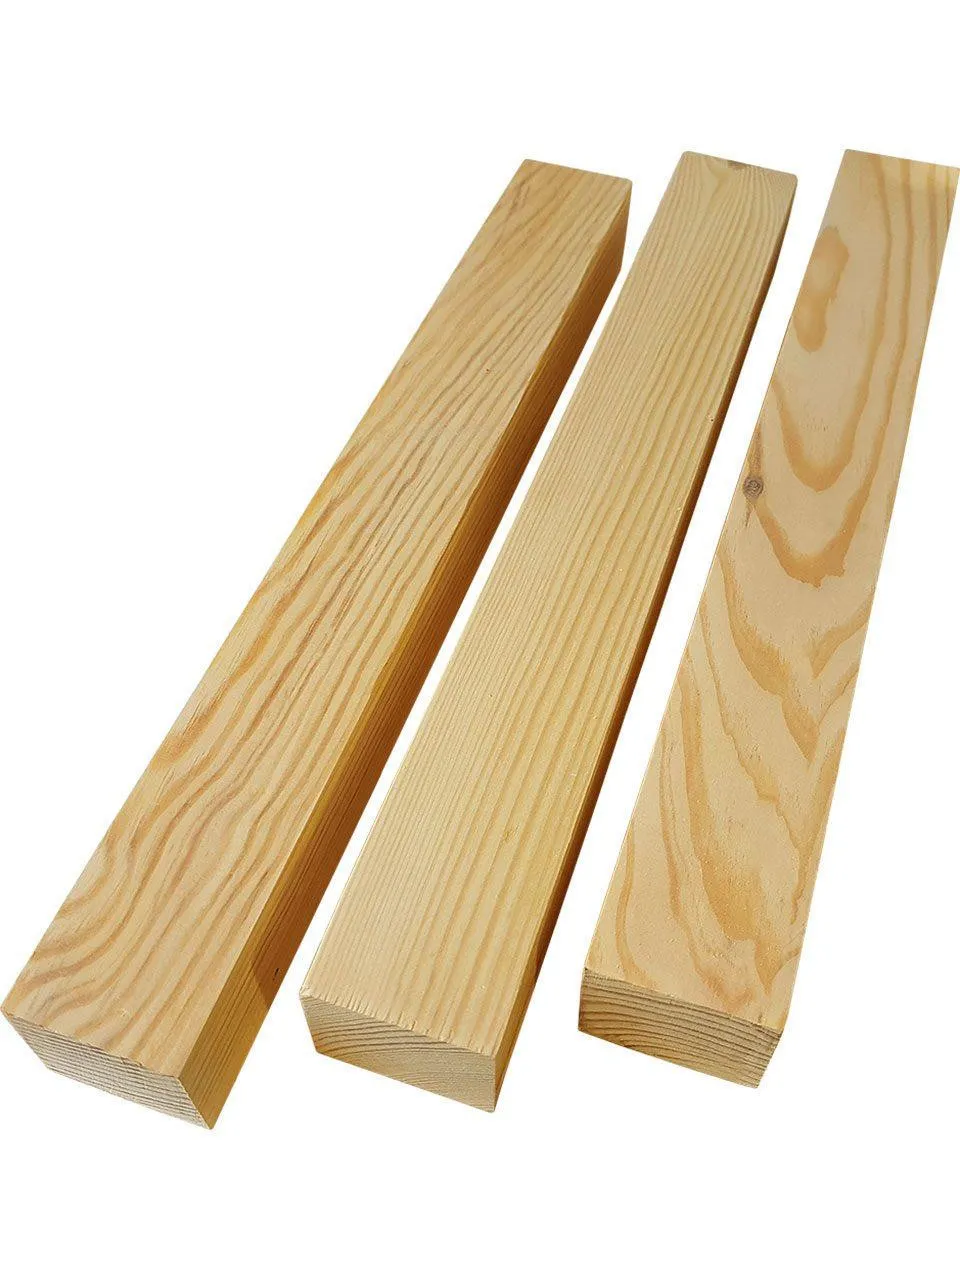 Рейки деревянные 4*3 (4 м/48 м)#1